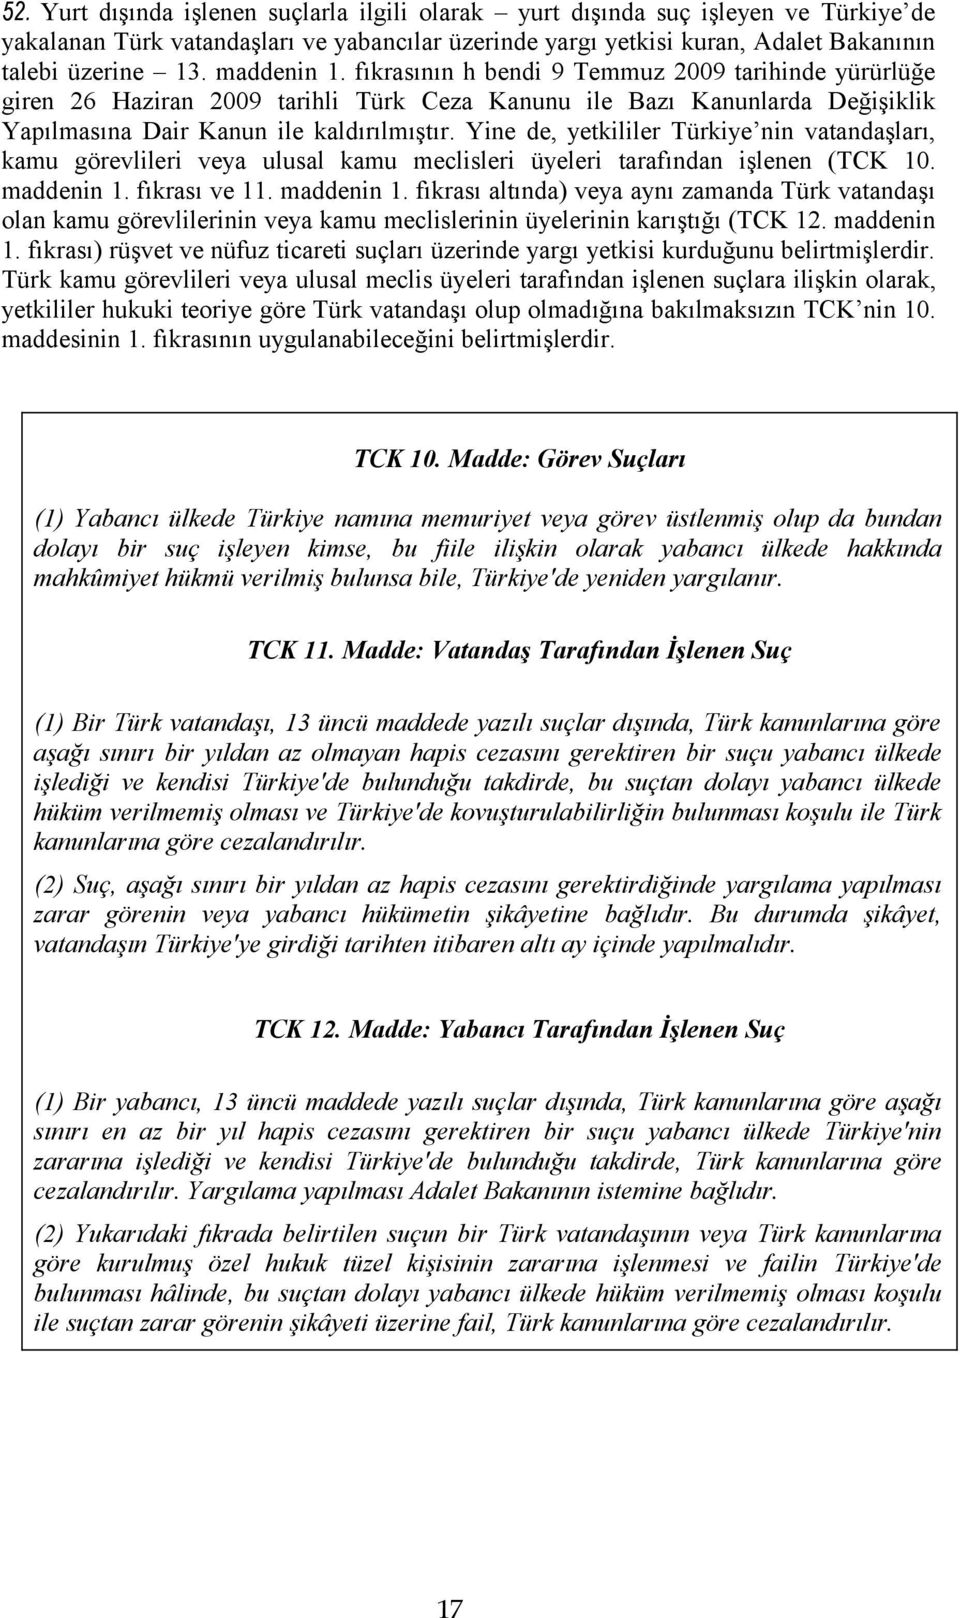 Yine de, yetkililer Türkiye nin vatandaşları, kamu görevlileri veya ulusal kamu meclisleri üyeleri tarafından işlenen (TCK 10. maddenin 1.